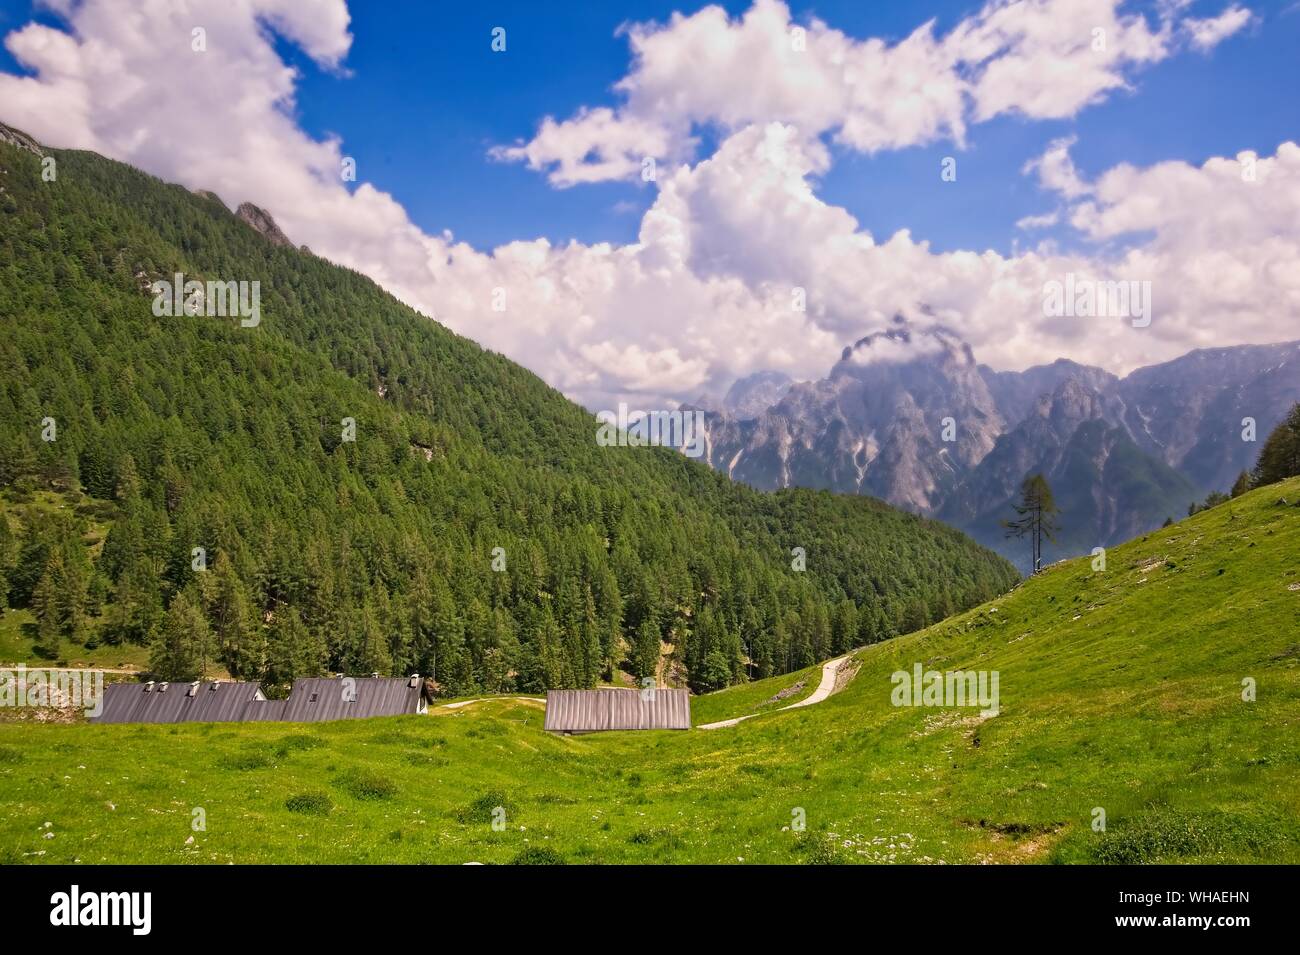 Panorama di montagna con dirty road,alberi e cielo blu con nuvole. Foto Stock